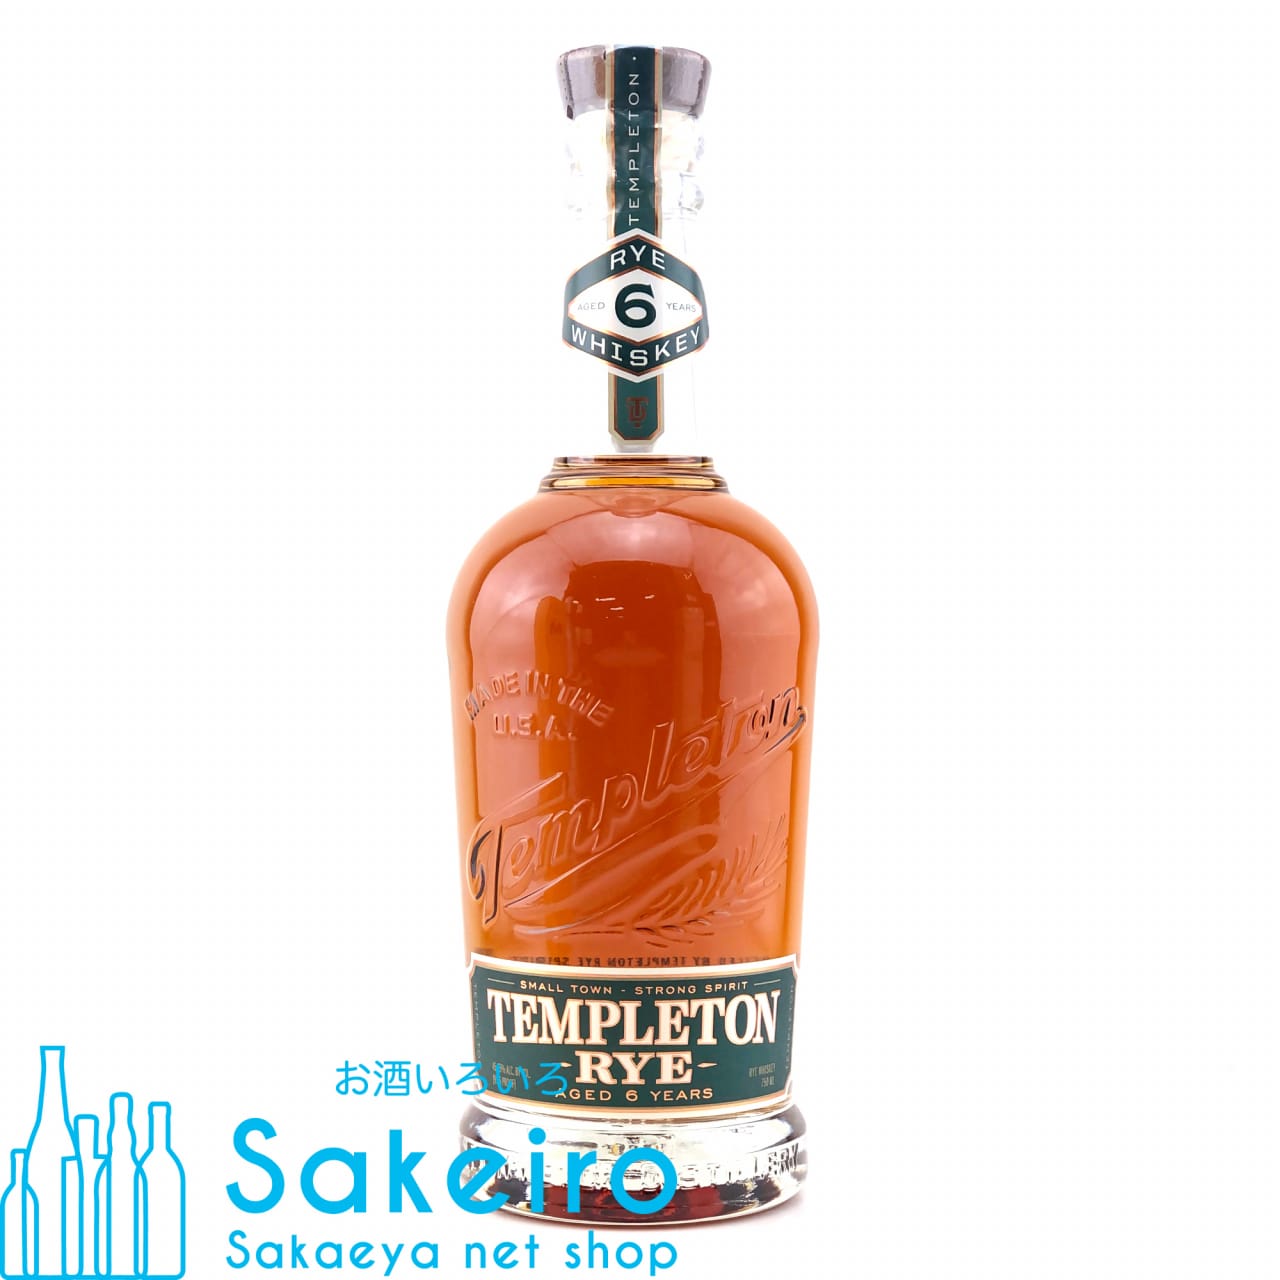 テンプルトン ライウイスキー 6年 45.75％ 750ml お酒いろいろ Sakeiro -Sakaeya net shop-